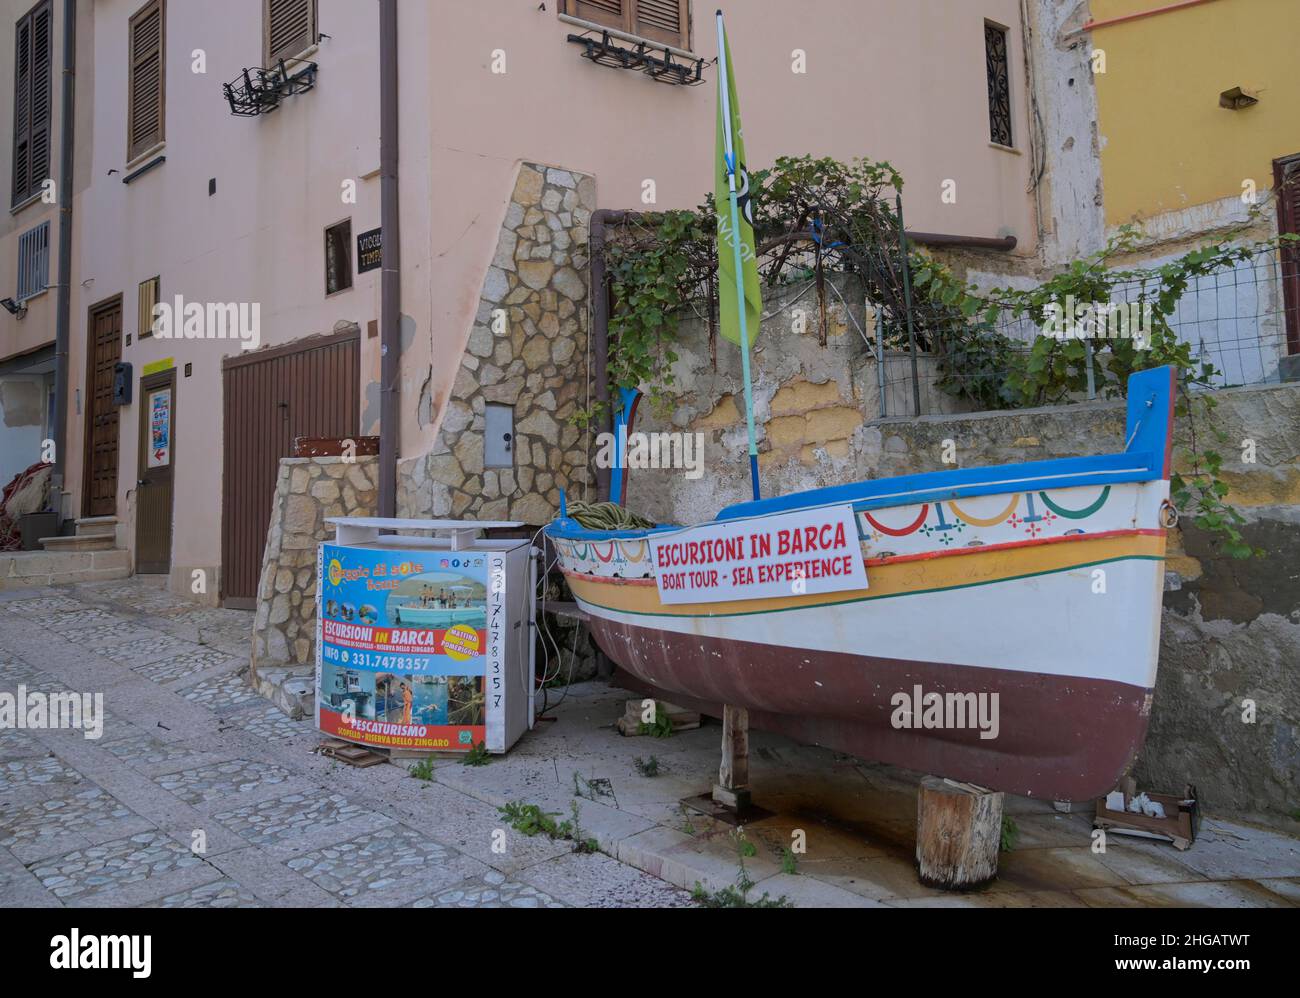 Bateau de pêche, publicité pour les excursions en bateau, port de pêche, Castellammare del Golfo, Sicile, Italie Banque D'Images